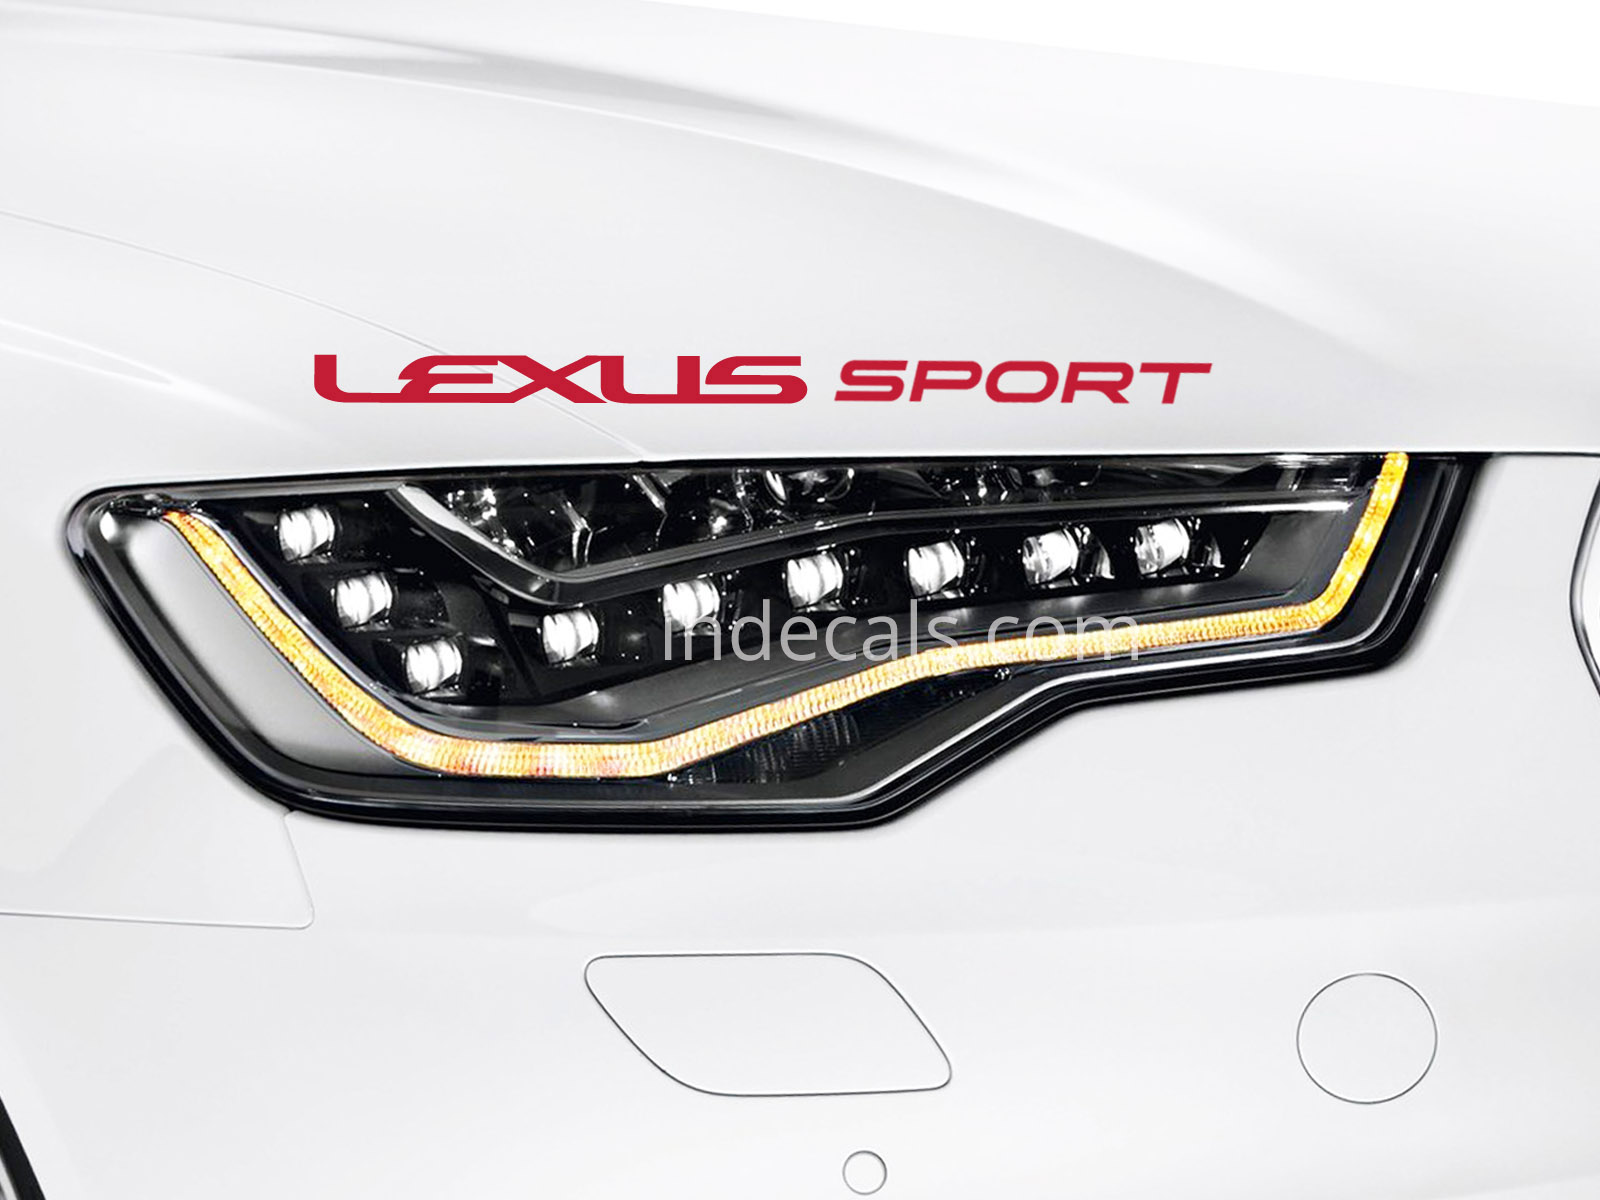 1 x Lexus Sport Sticker - Red